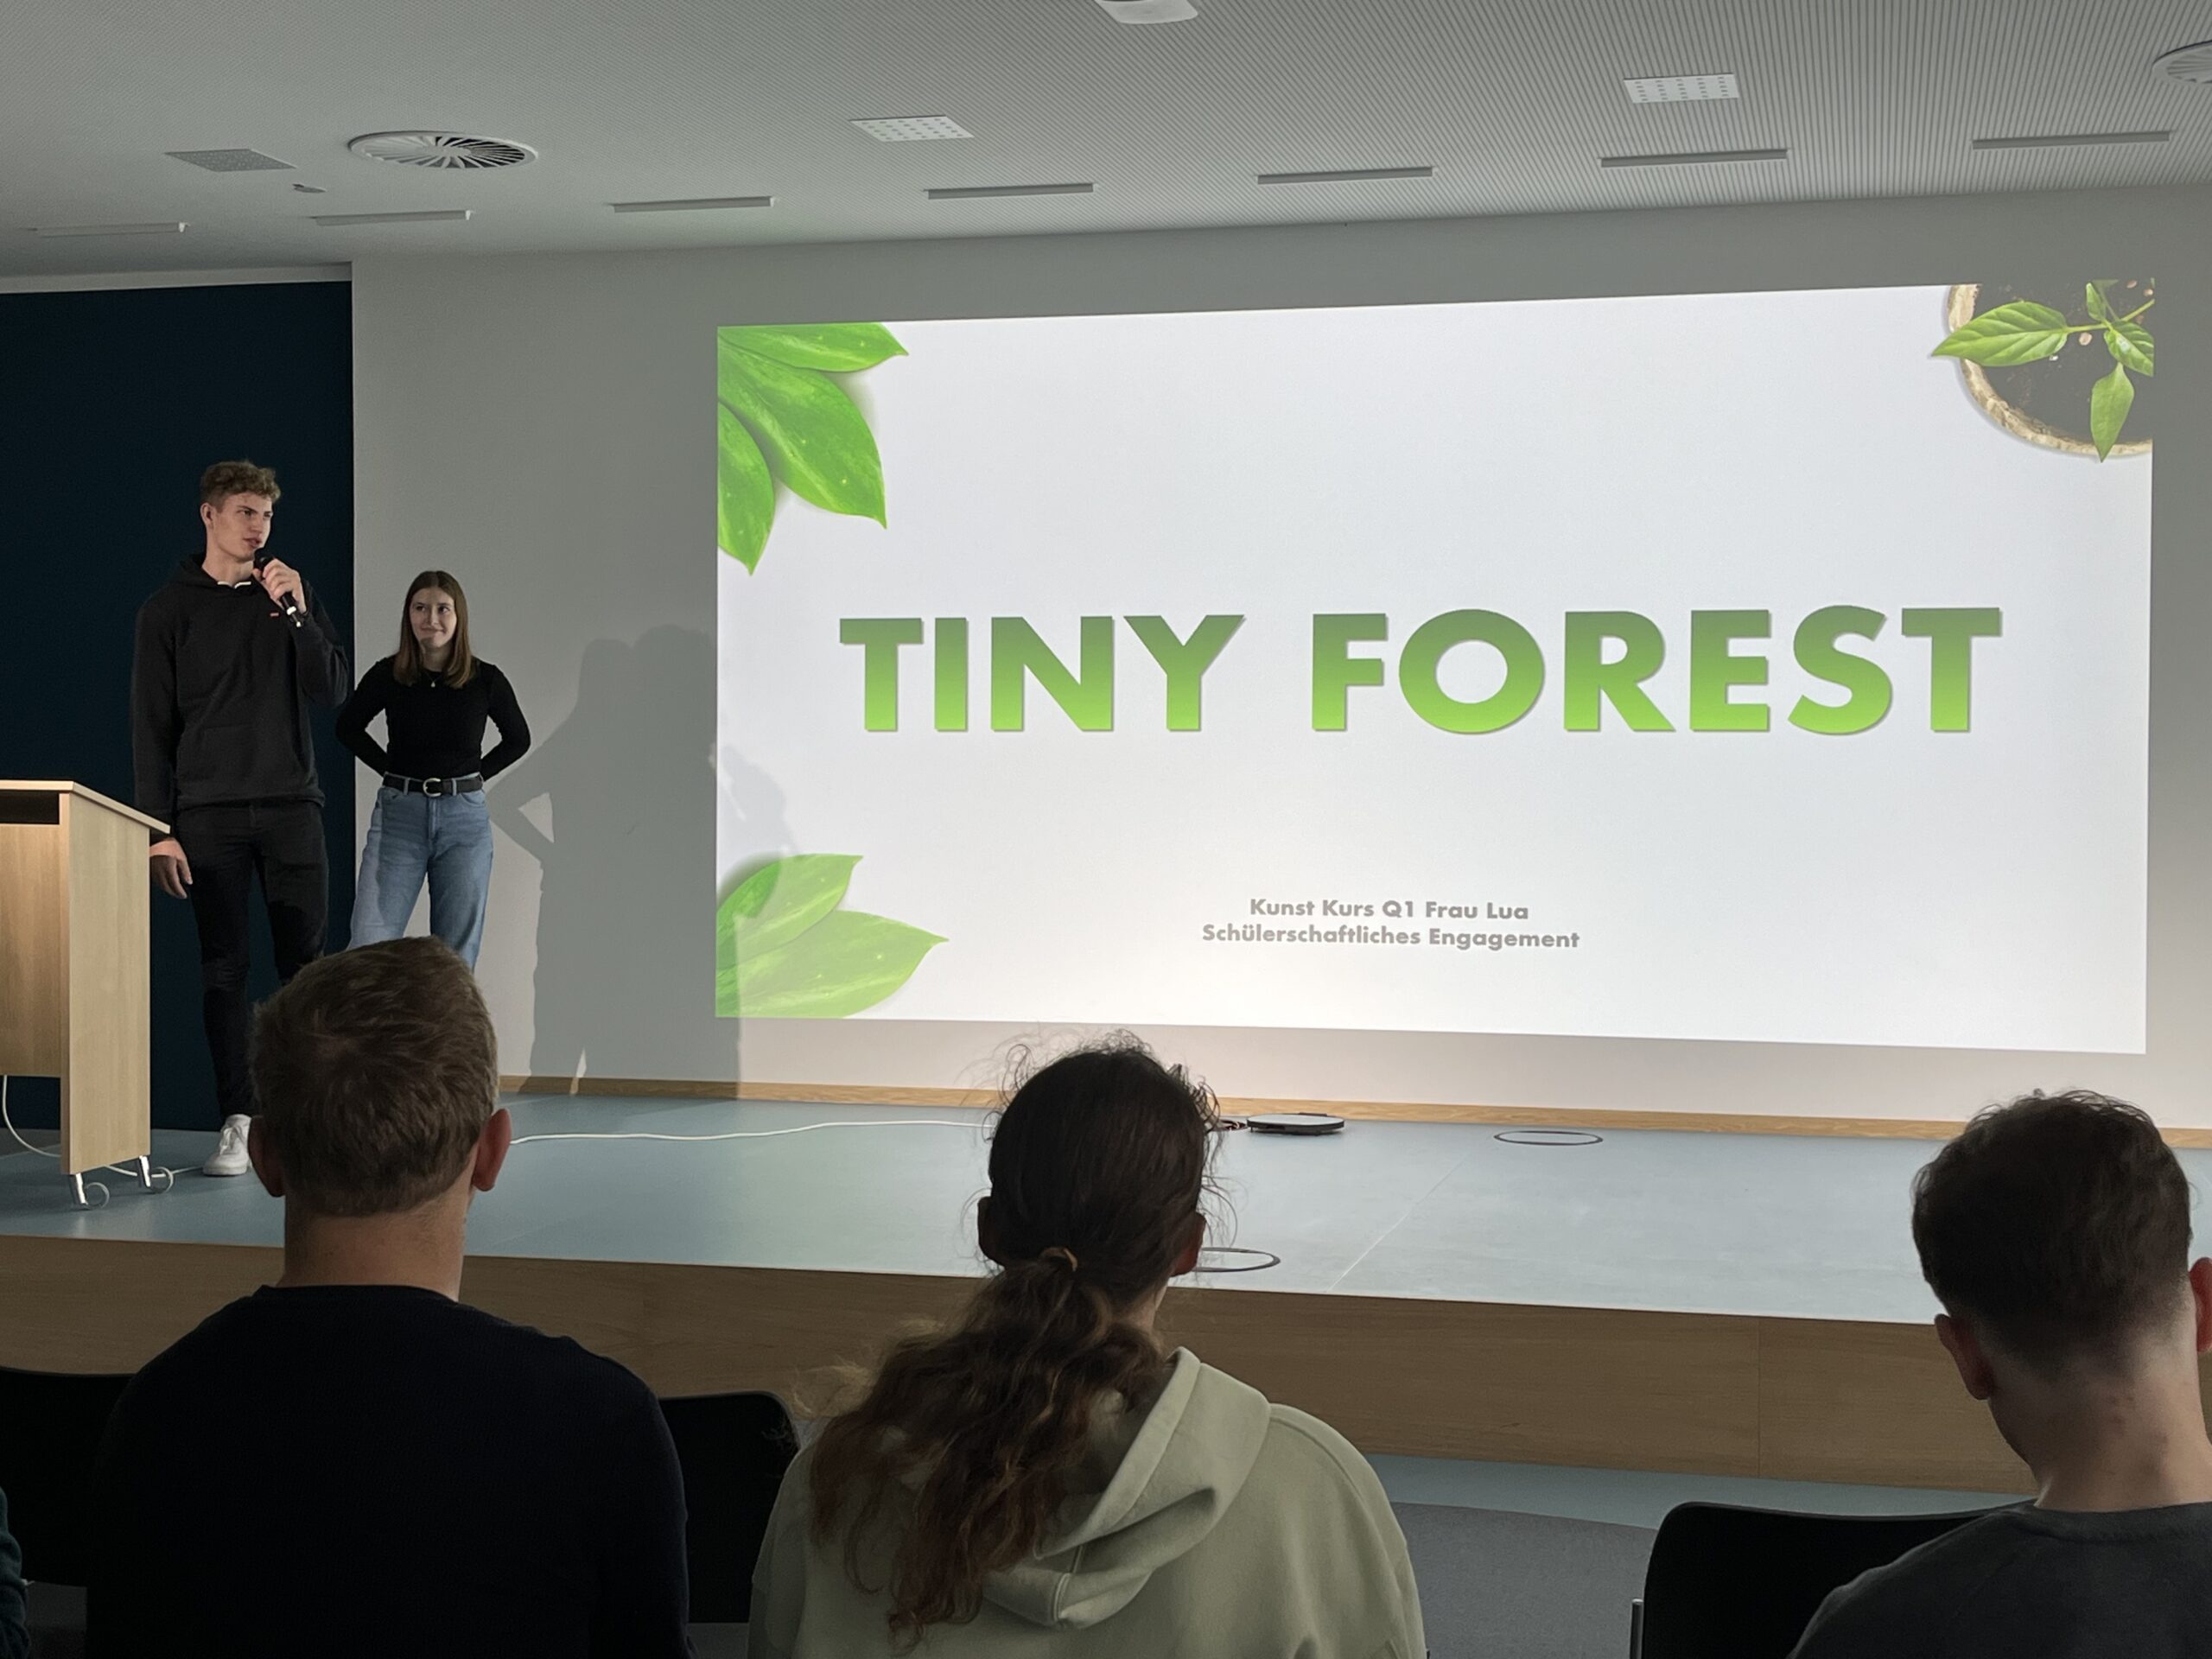 Gemeinsam für die Natur: Unser Tiny Forest Projekt an der Schule